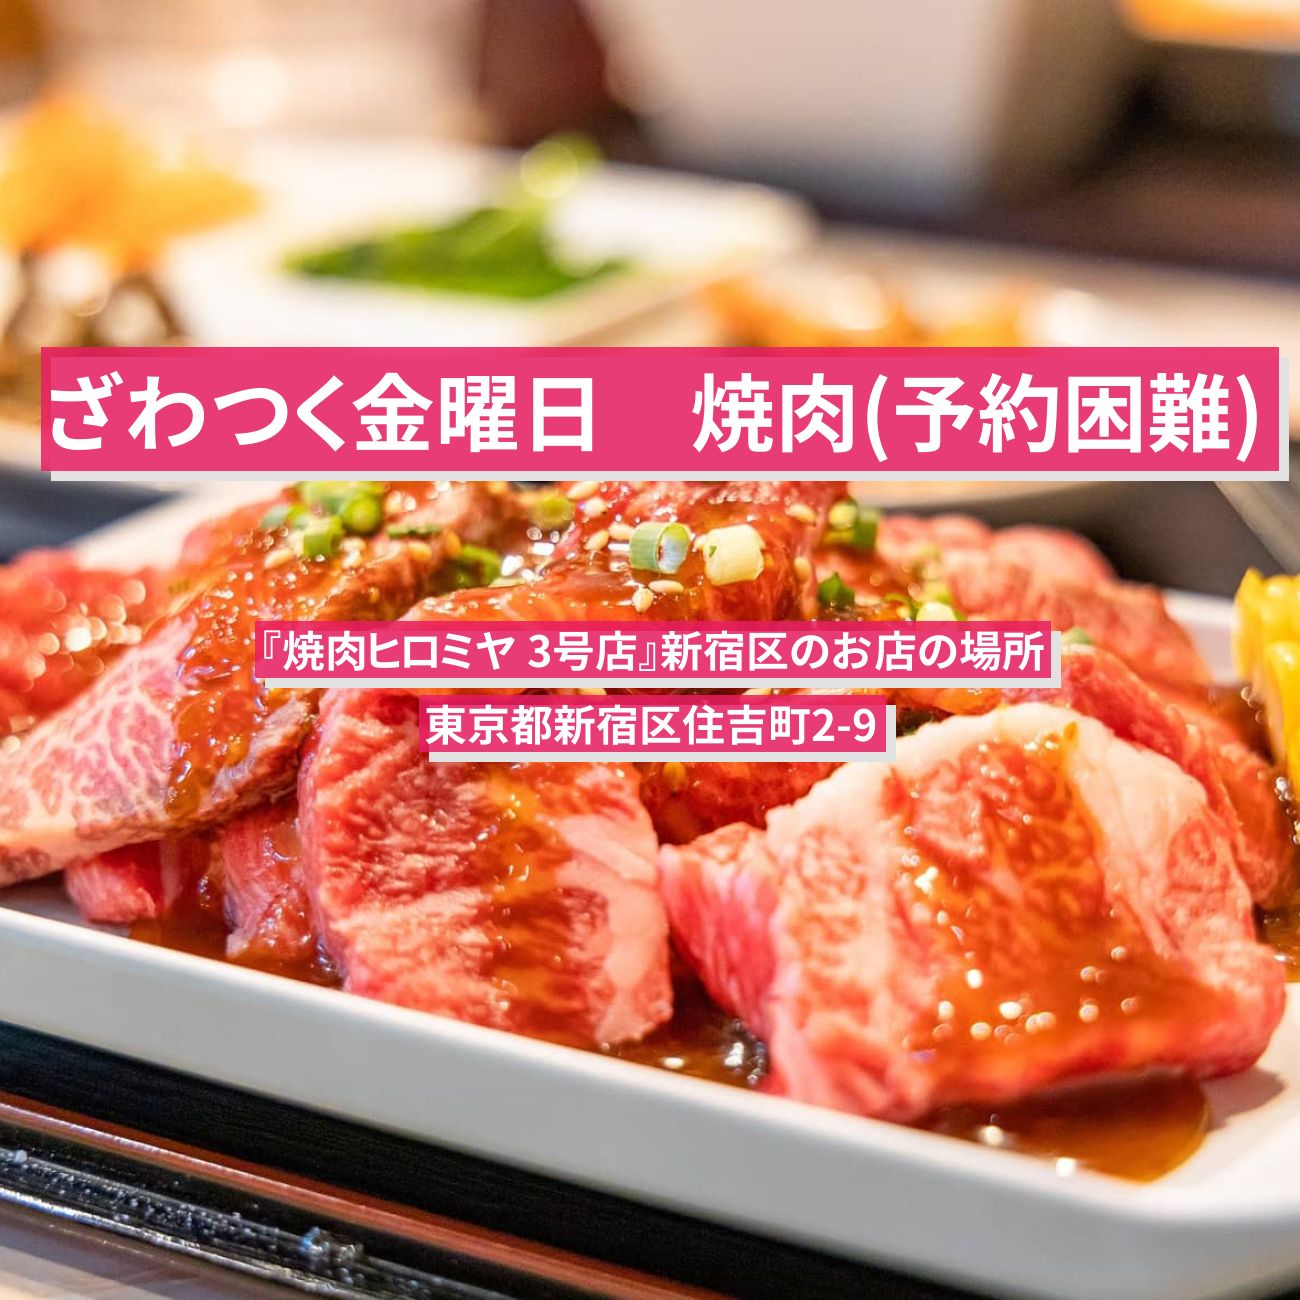 【ざわつく金曜日】焼肉(予約困難)『焼肉ヒロミヤ 3号店』新宿区のお店の場所